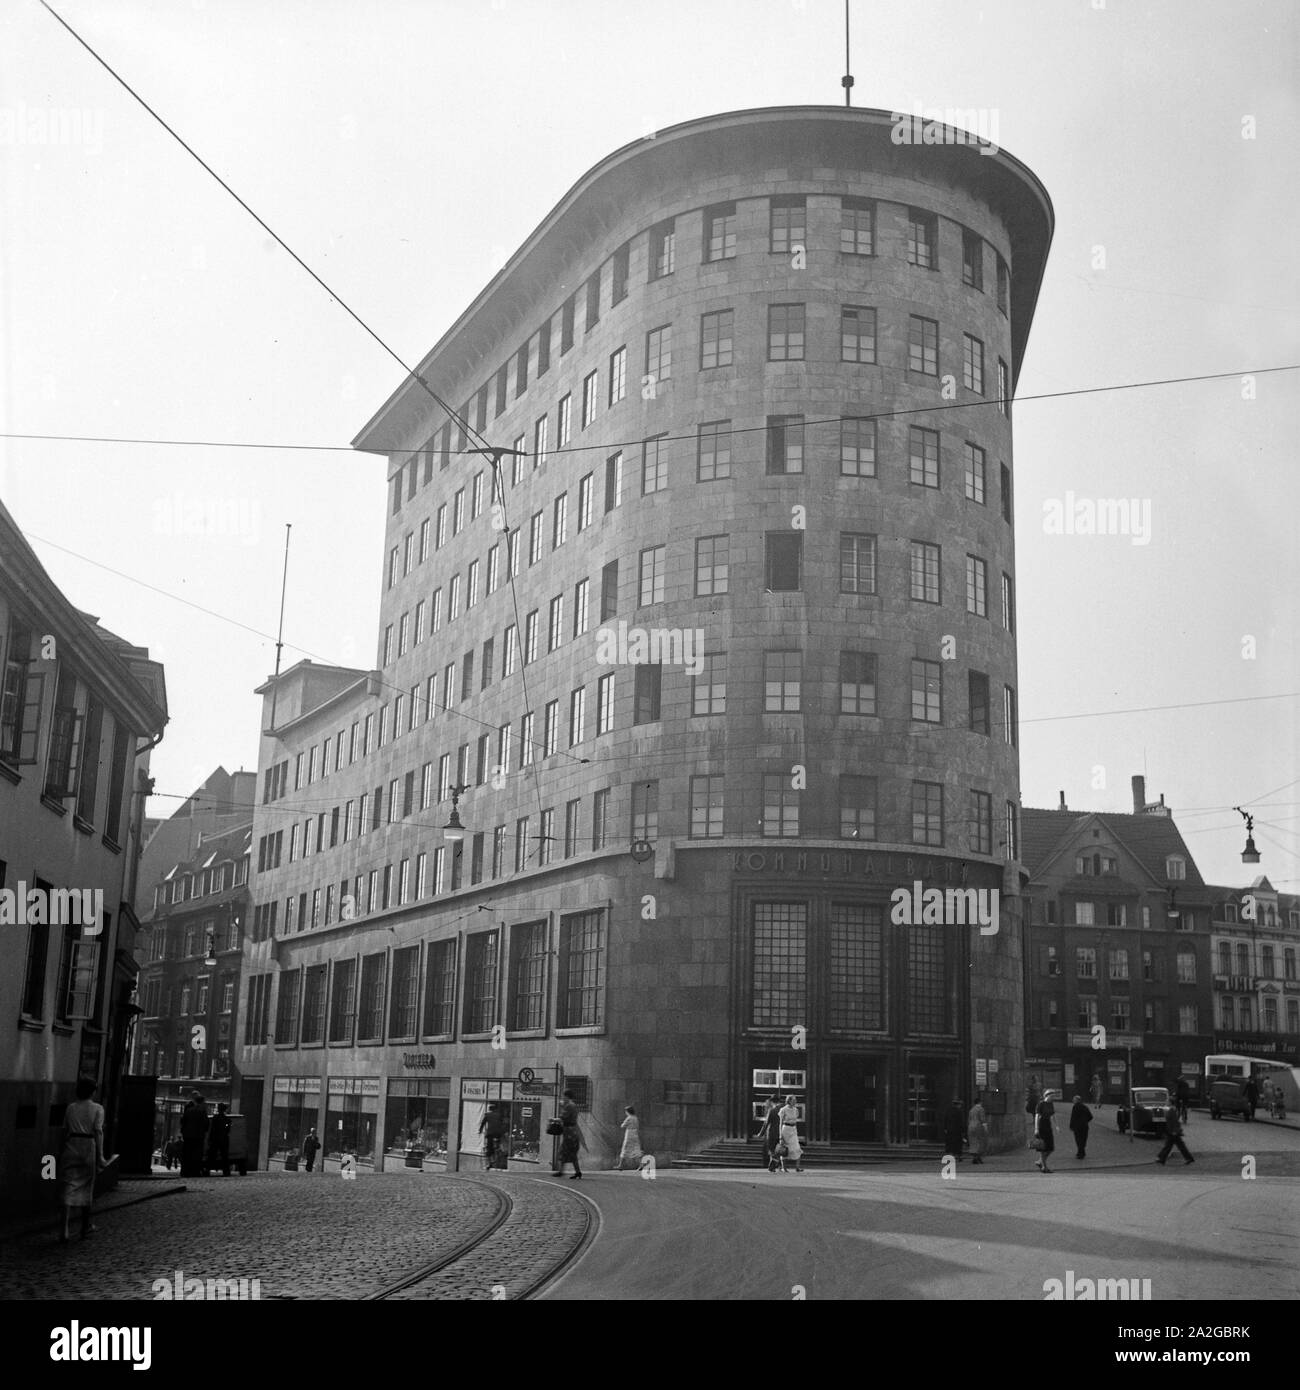 Das Gebäude der Kommunalbank am Dr. Ruer Platz in Bochum, Deutschland 1930er Jahre. Building of mutual savings bank at Dr. Ruer Platz square in Bochum, Germany 1930s- Stock Photo